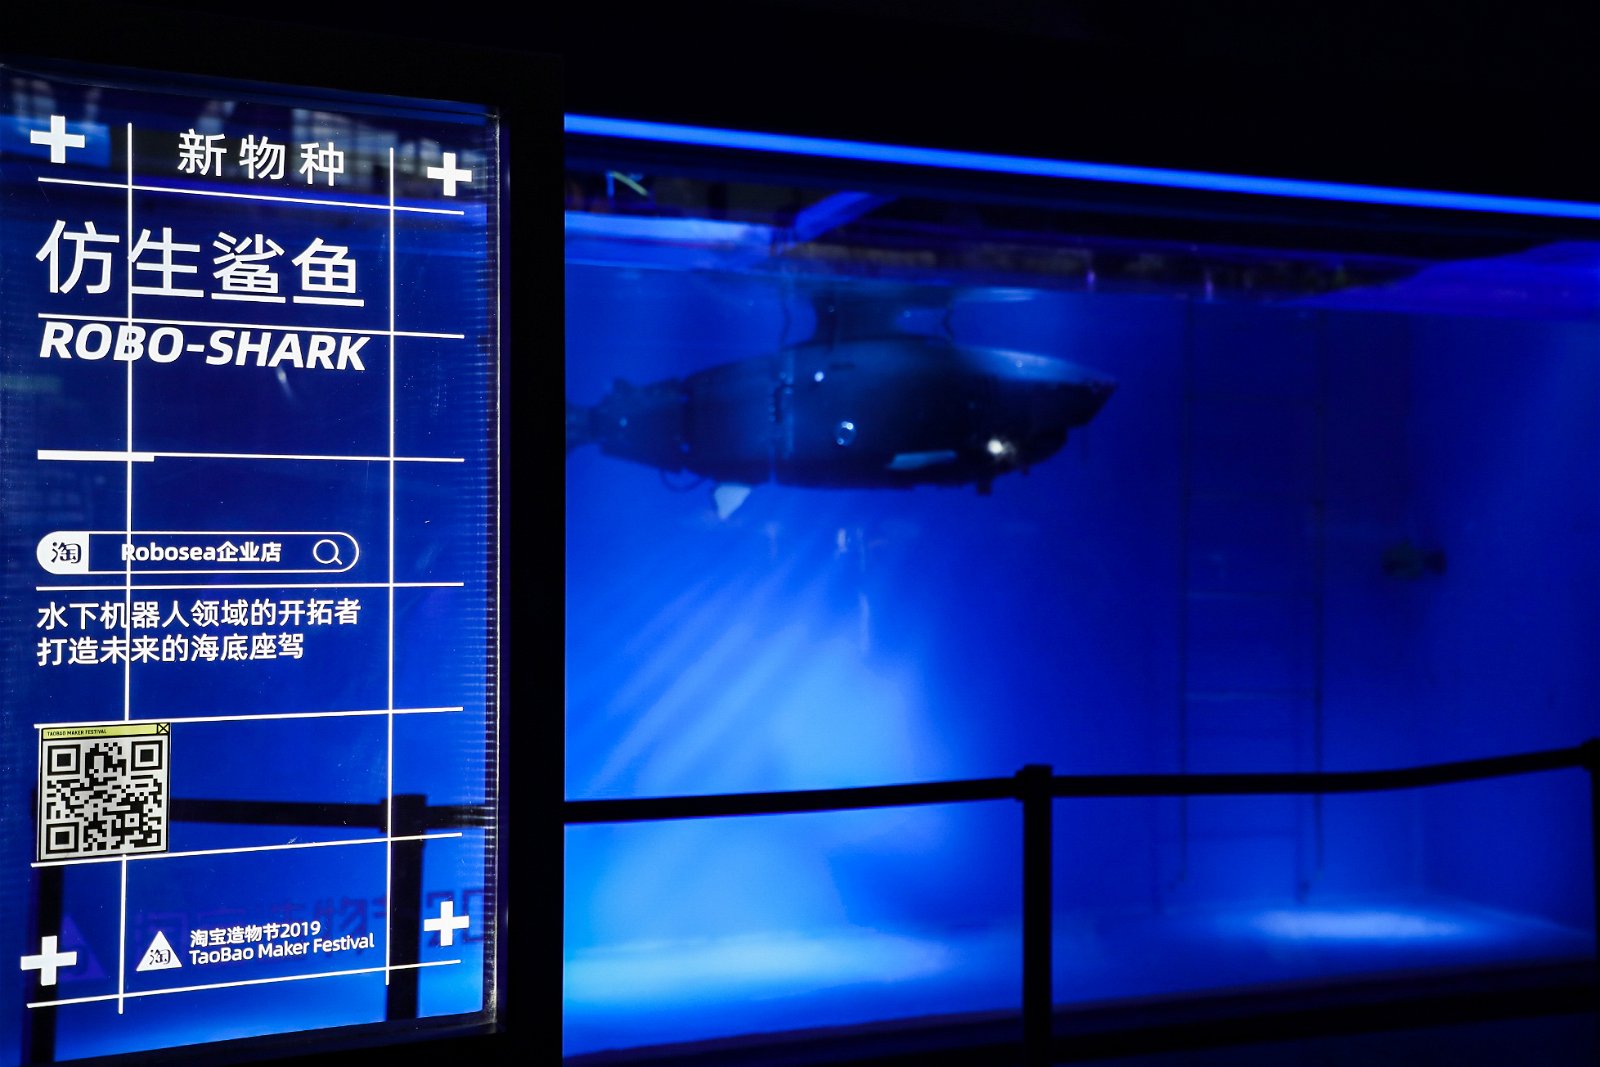 ROBO-SHARK具有高航速、大载荷、低噪音的优点，技术含量遥遥领先同类的水下机器人。